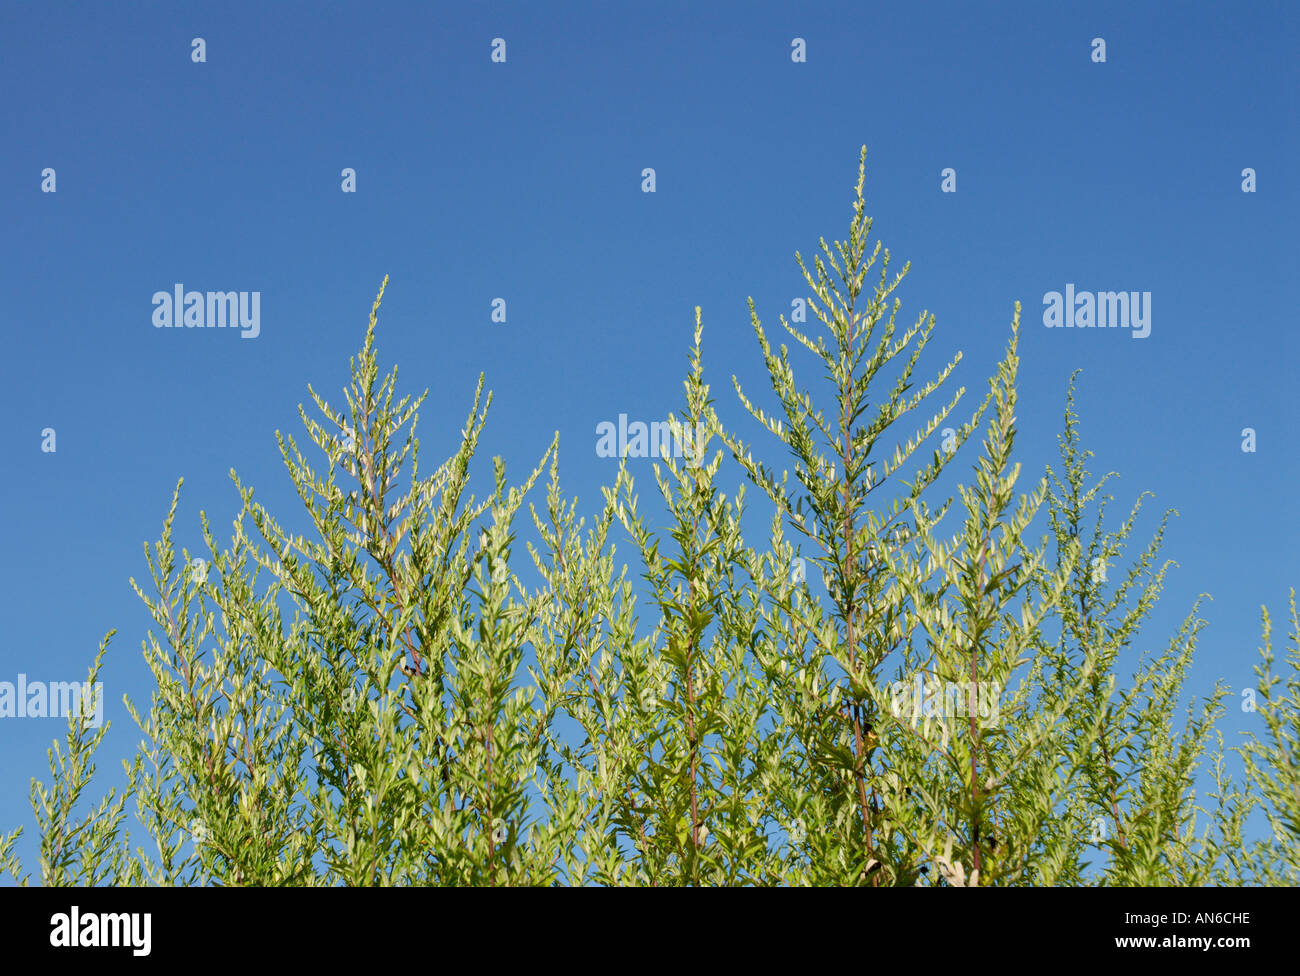 Ambrosie, Ambrosia Artemisiifolia, Pflanzen gegen blauen Himmel. Ambrosia-Pollen ist eine saisonale Allergen. Stockfoto